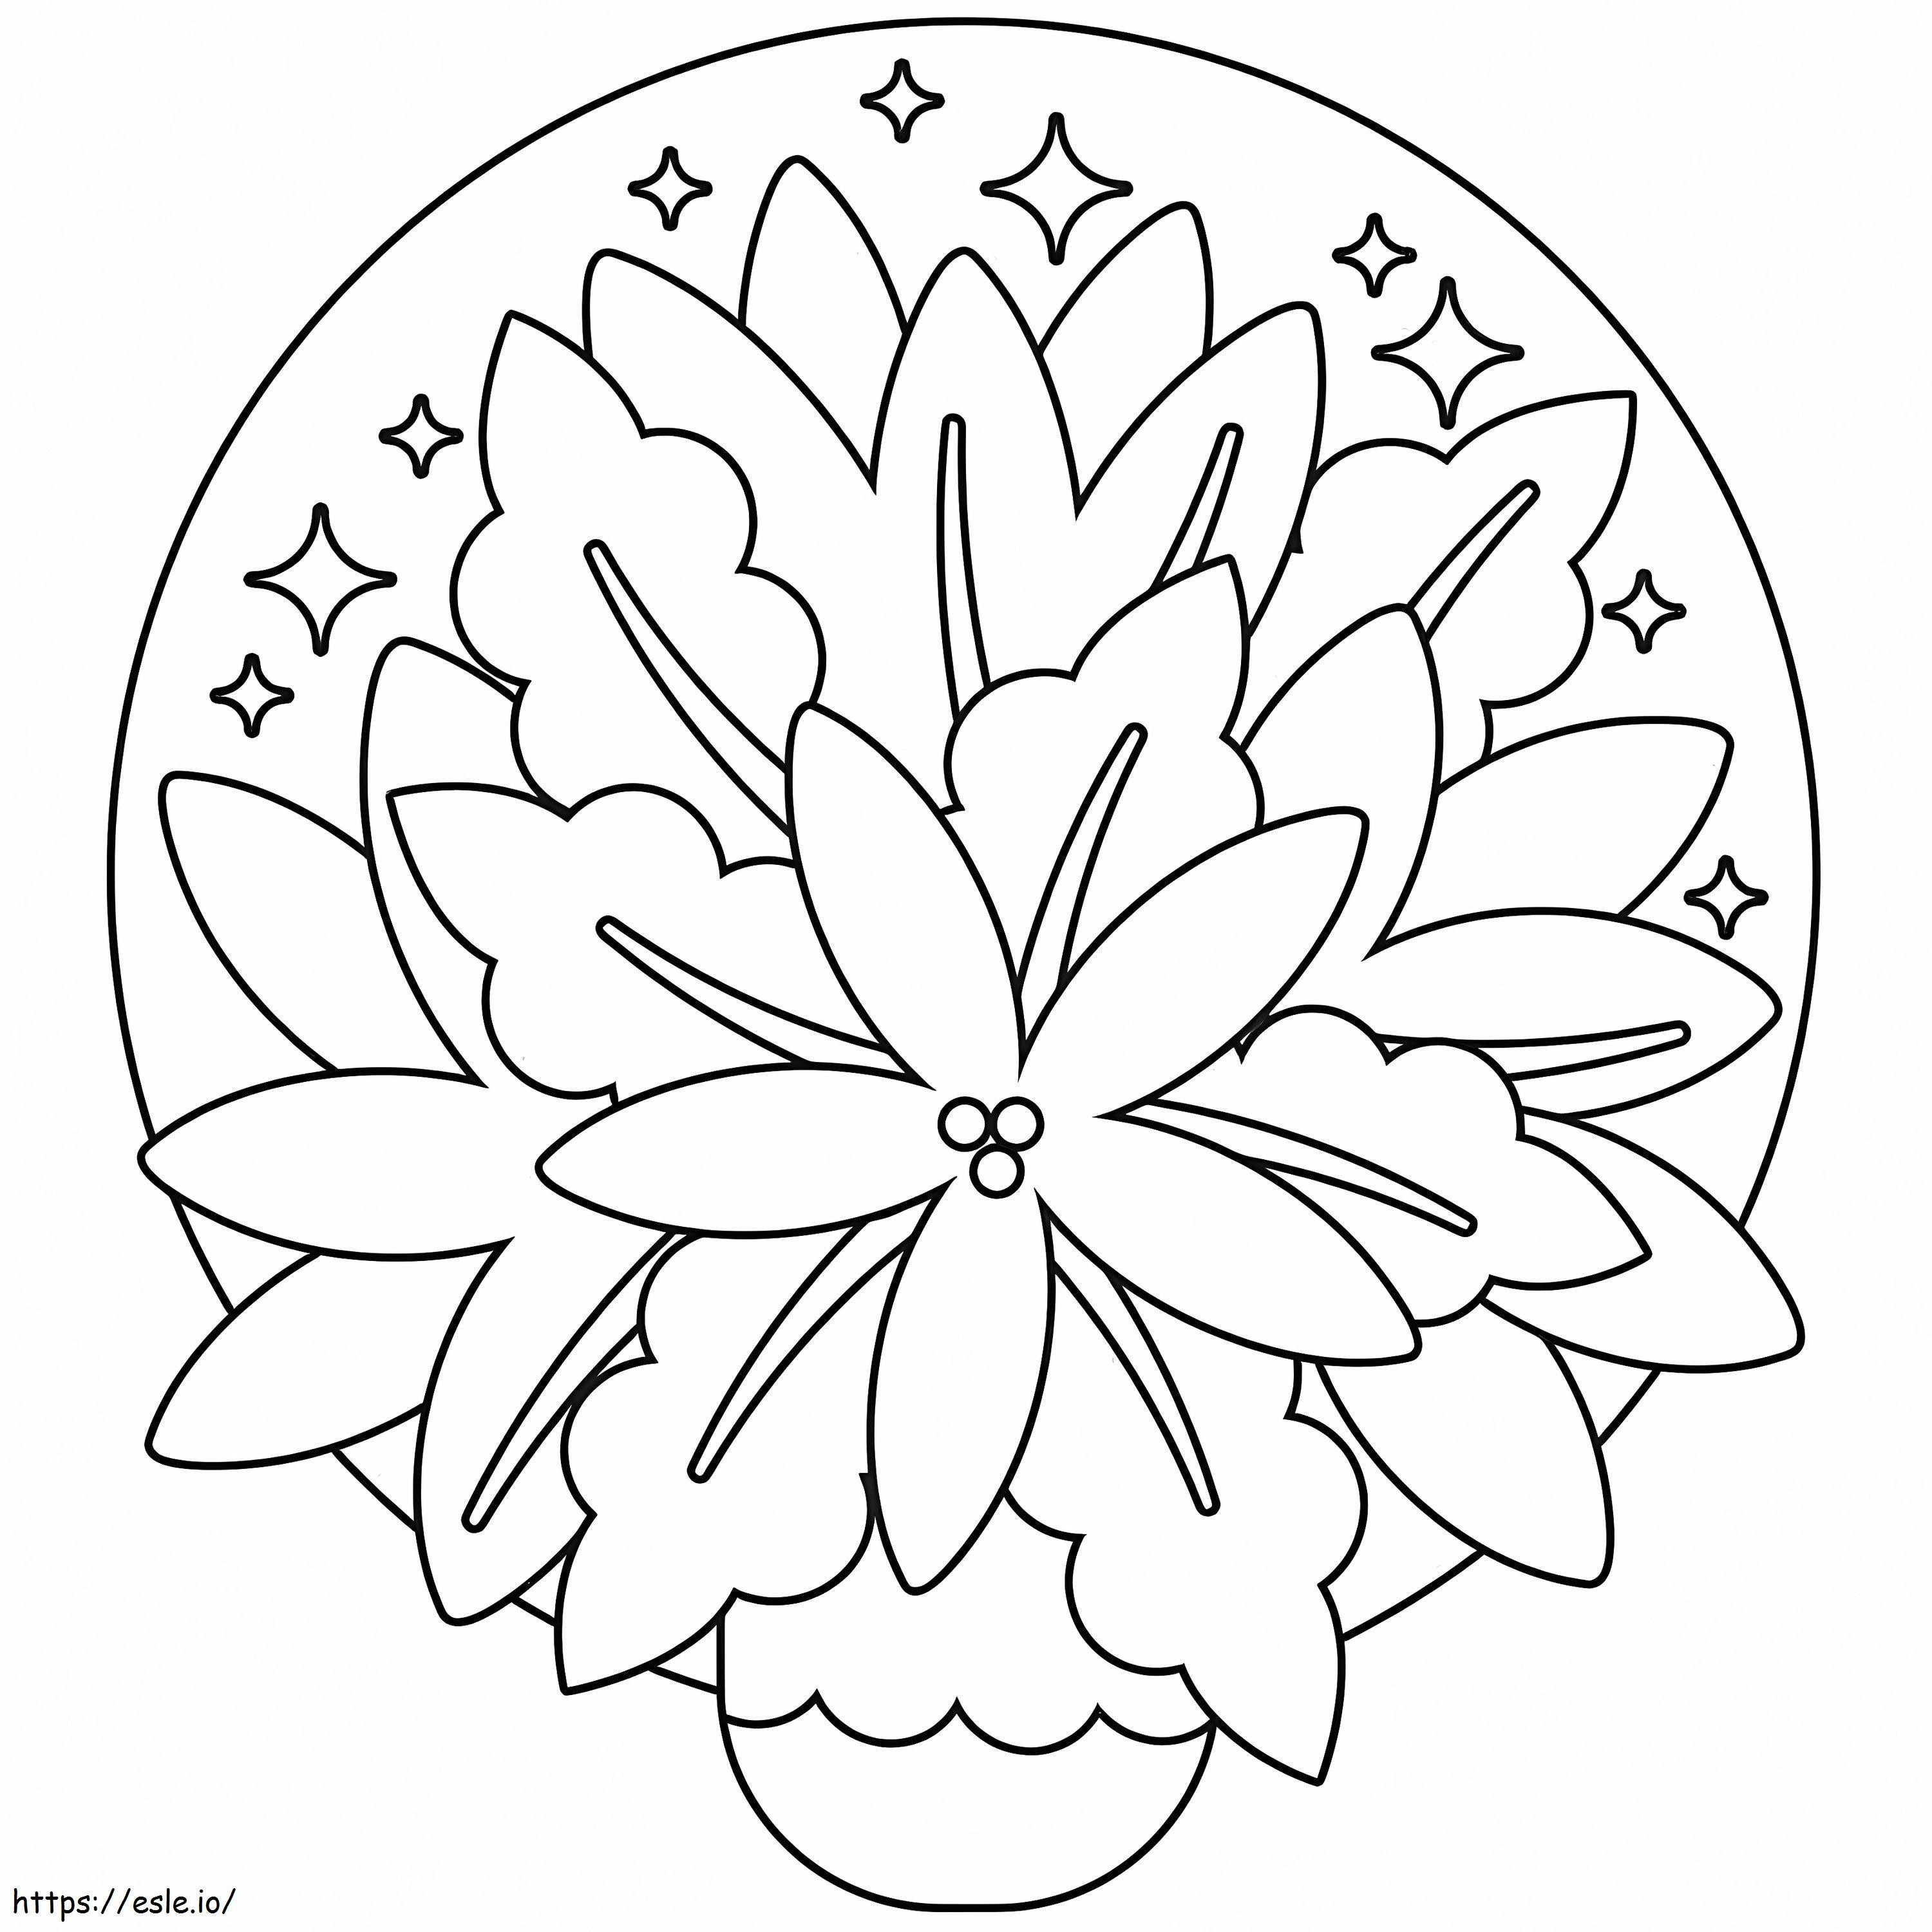 Imprimir flor de pascua para colorear